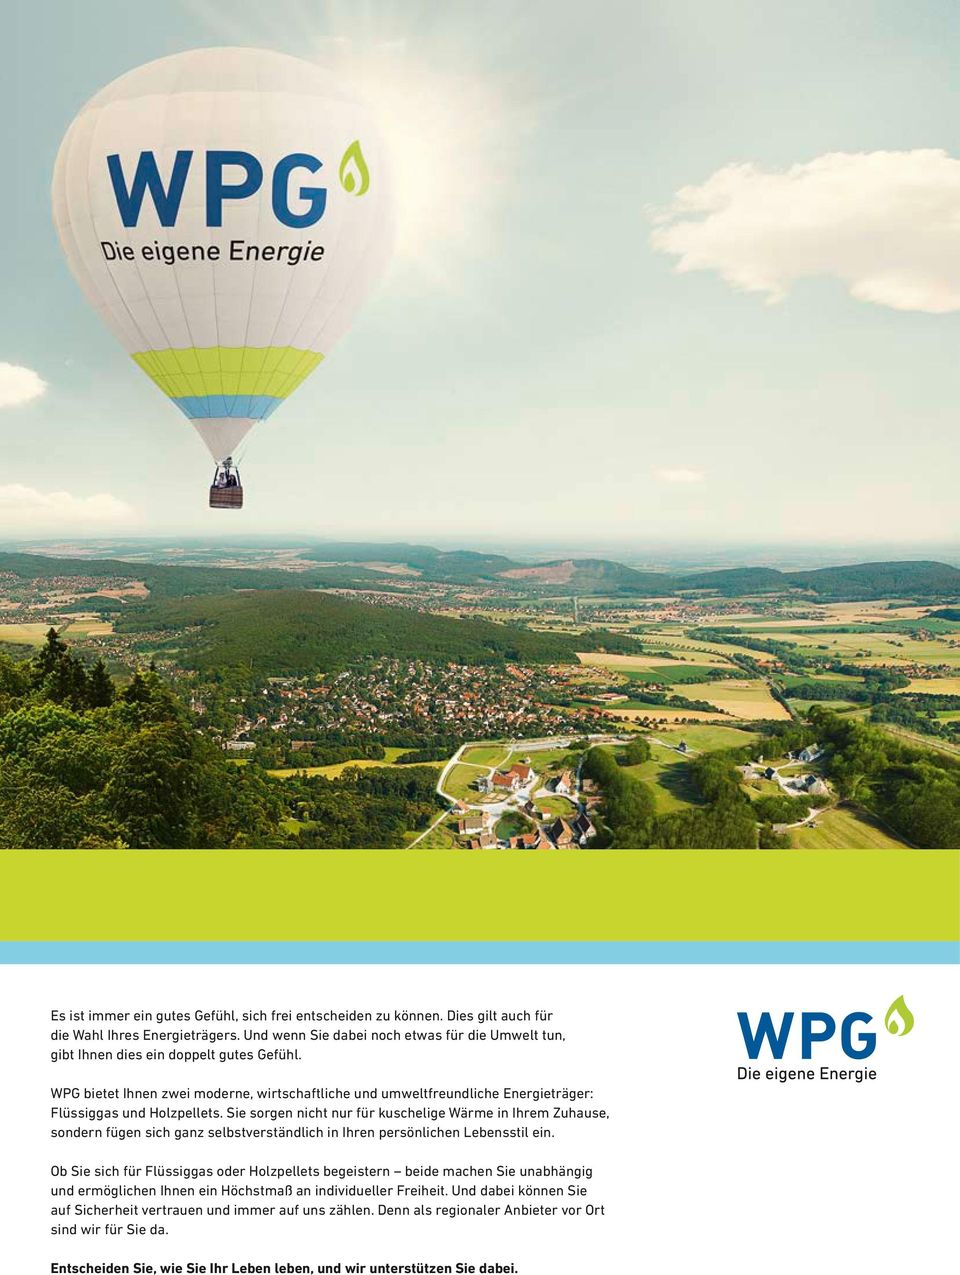 WPG bietet Ihnen zwei moderne, wirtschaftliche und umweltfreundliche Energieträger: Flüssiggas und Holzpellets.